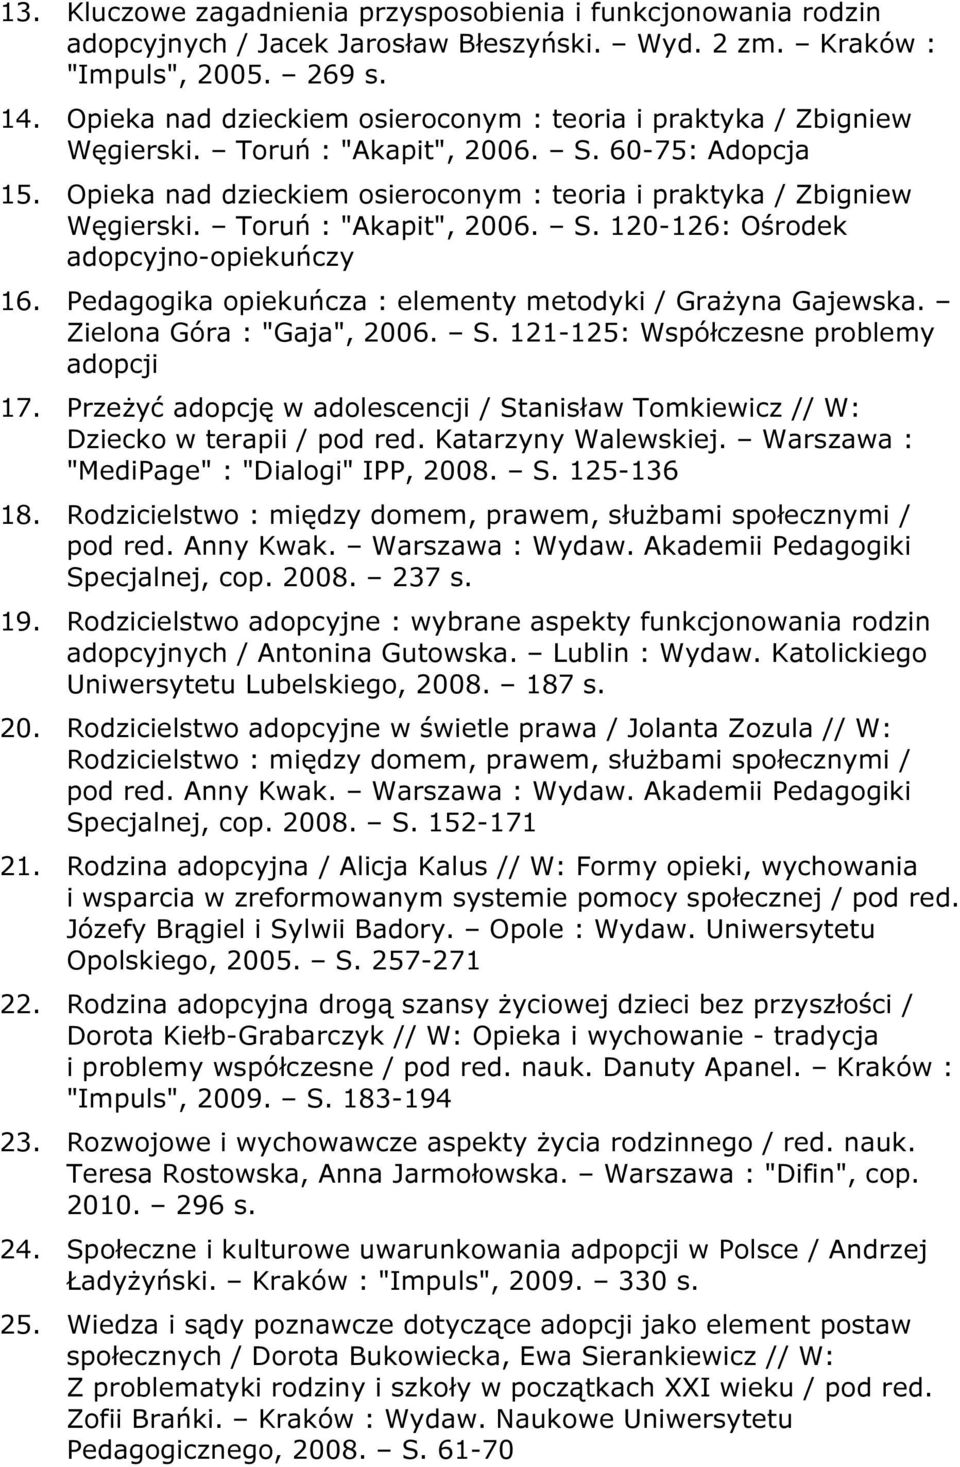 Toruń : "Akapit", 2006. S. 120-126: Ośrodek adopcyjno-opiekuńczy 16. Pedagogika opiekuńcza : elementy metodyki / Grażyna Gajewska. Zielona Góra : "Gaja", 2006. S. 121-125: Współczesne problemy adopcji 17.